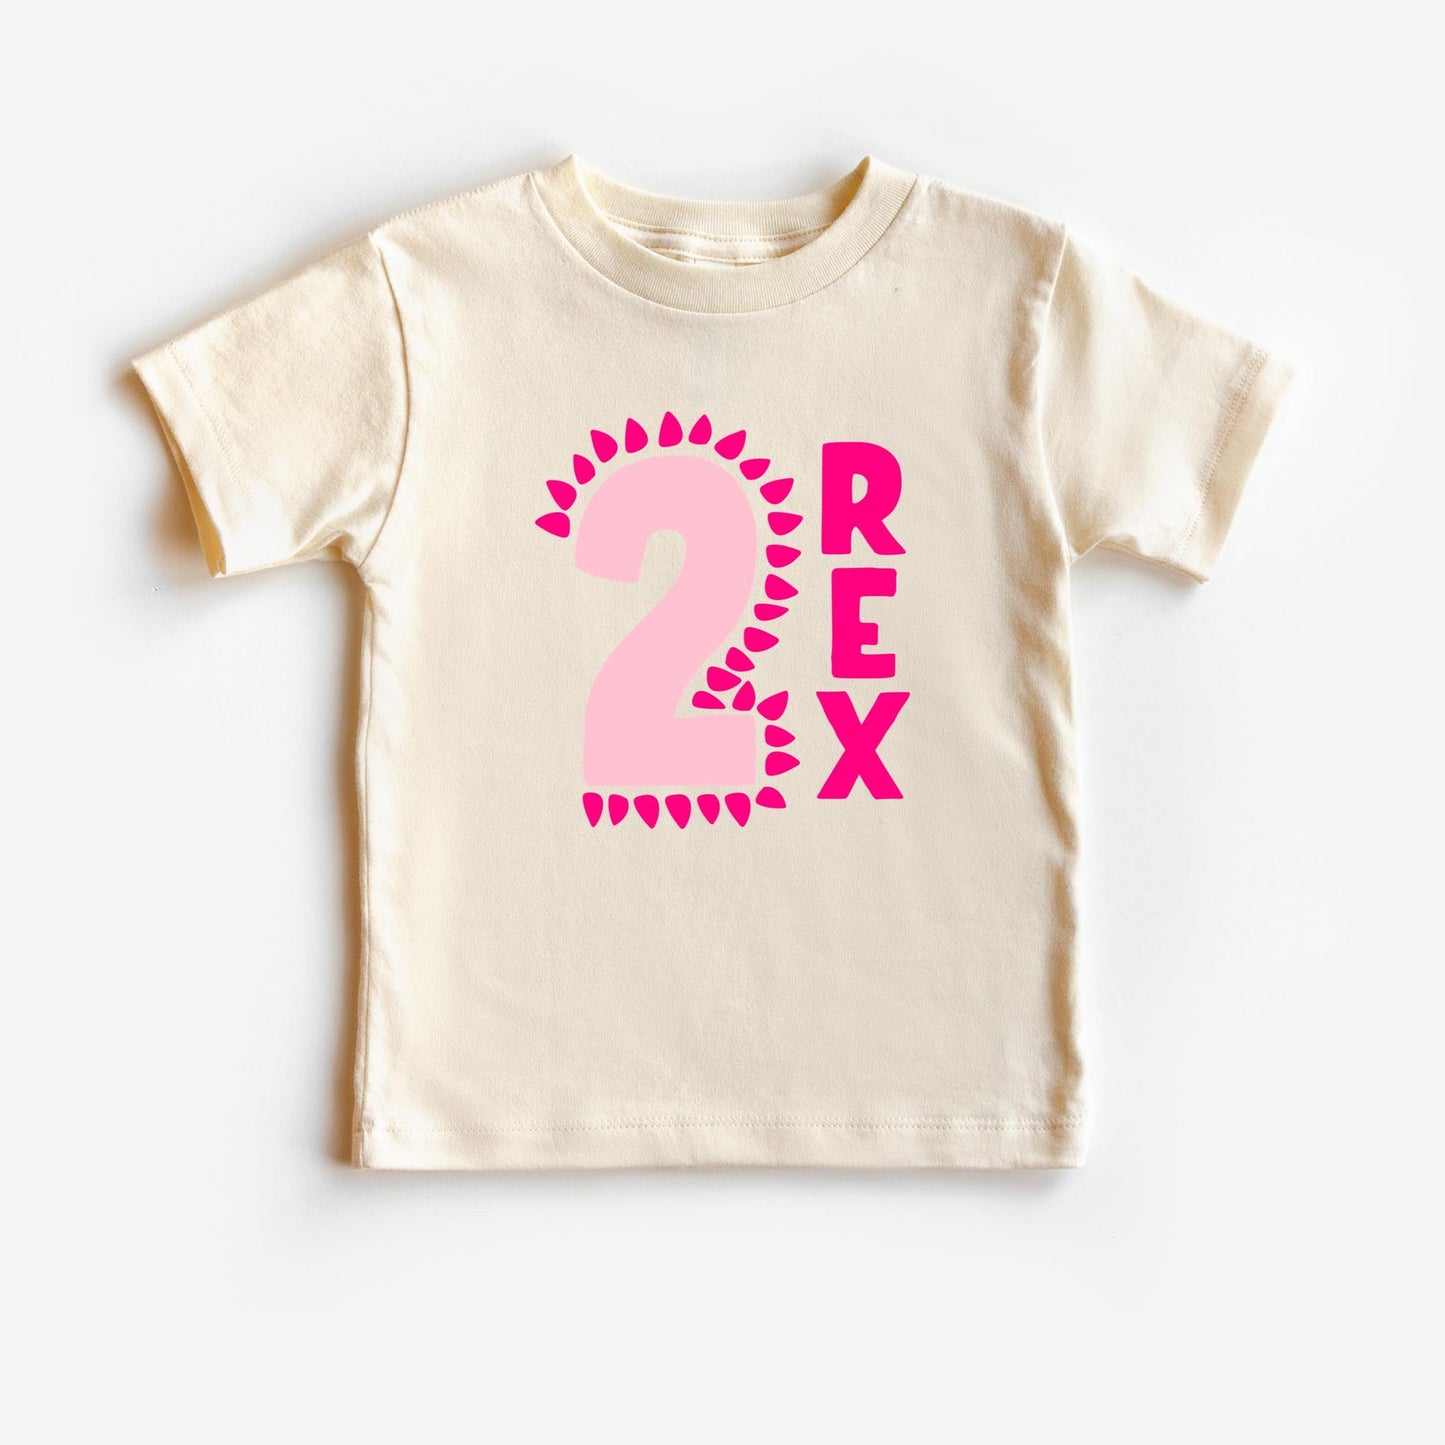 2 REX T-shirt